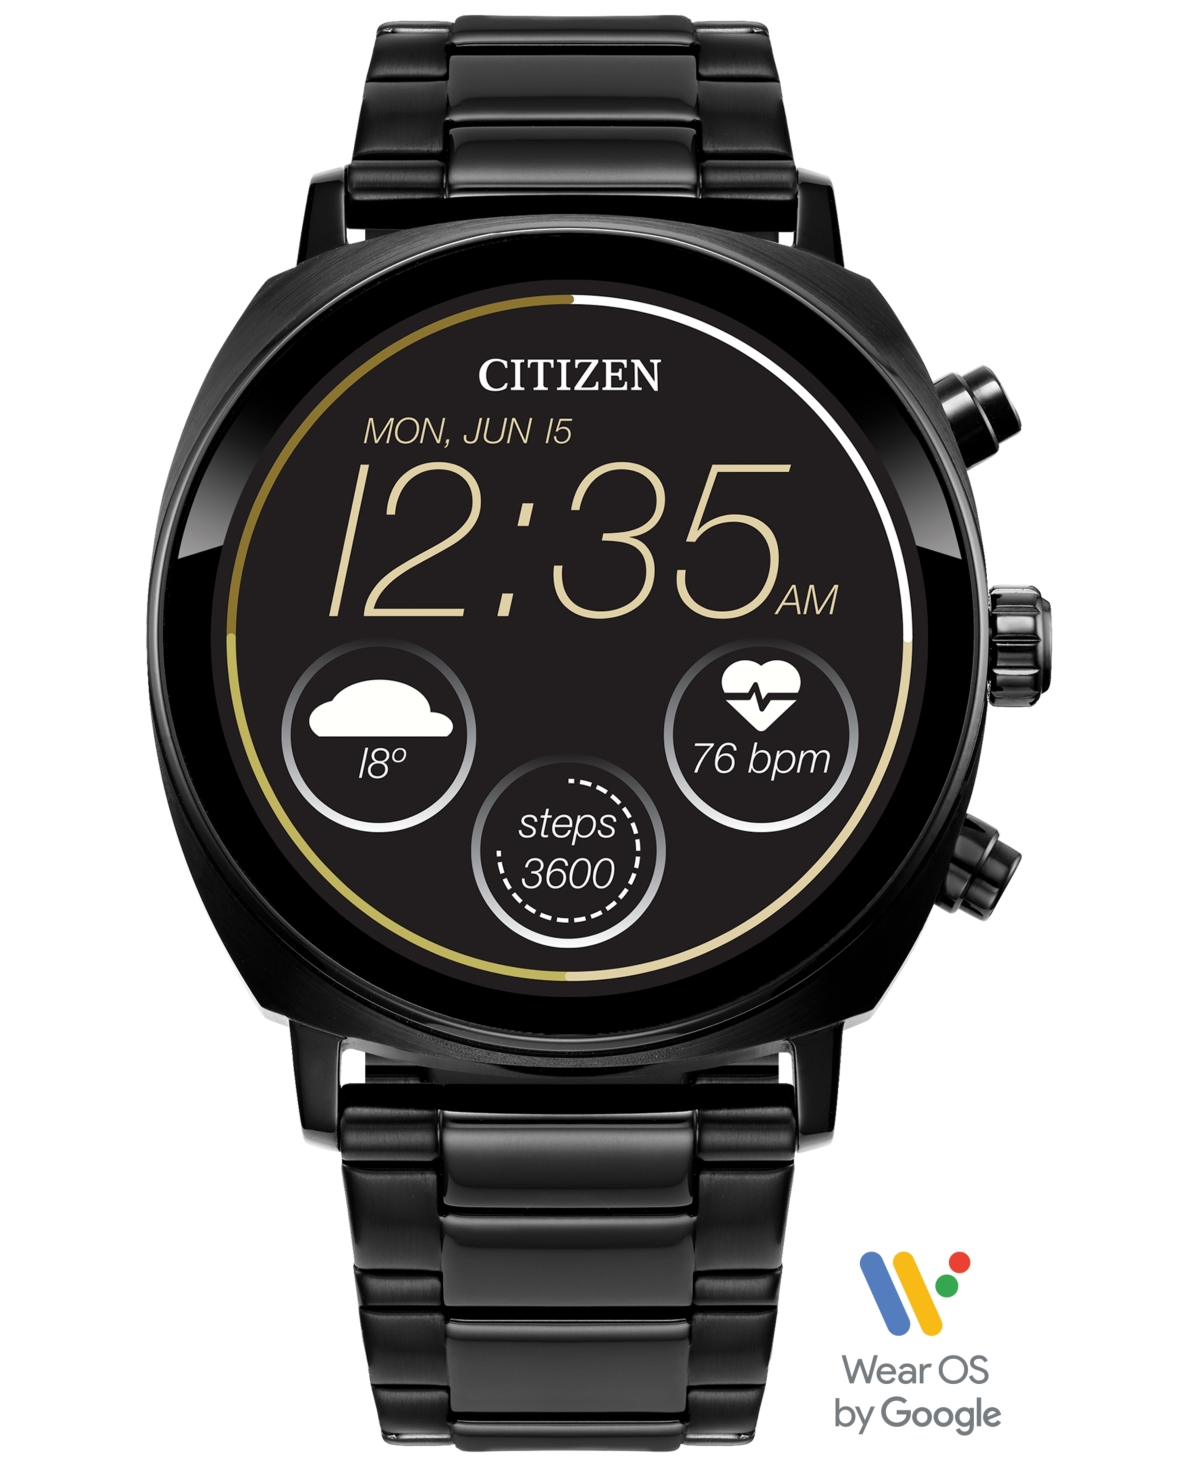 Citizen Unisex Cz Smart Wear Os Black-tone Stainless Steel Bracelet Smart Watch 41mm